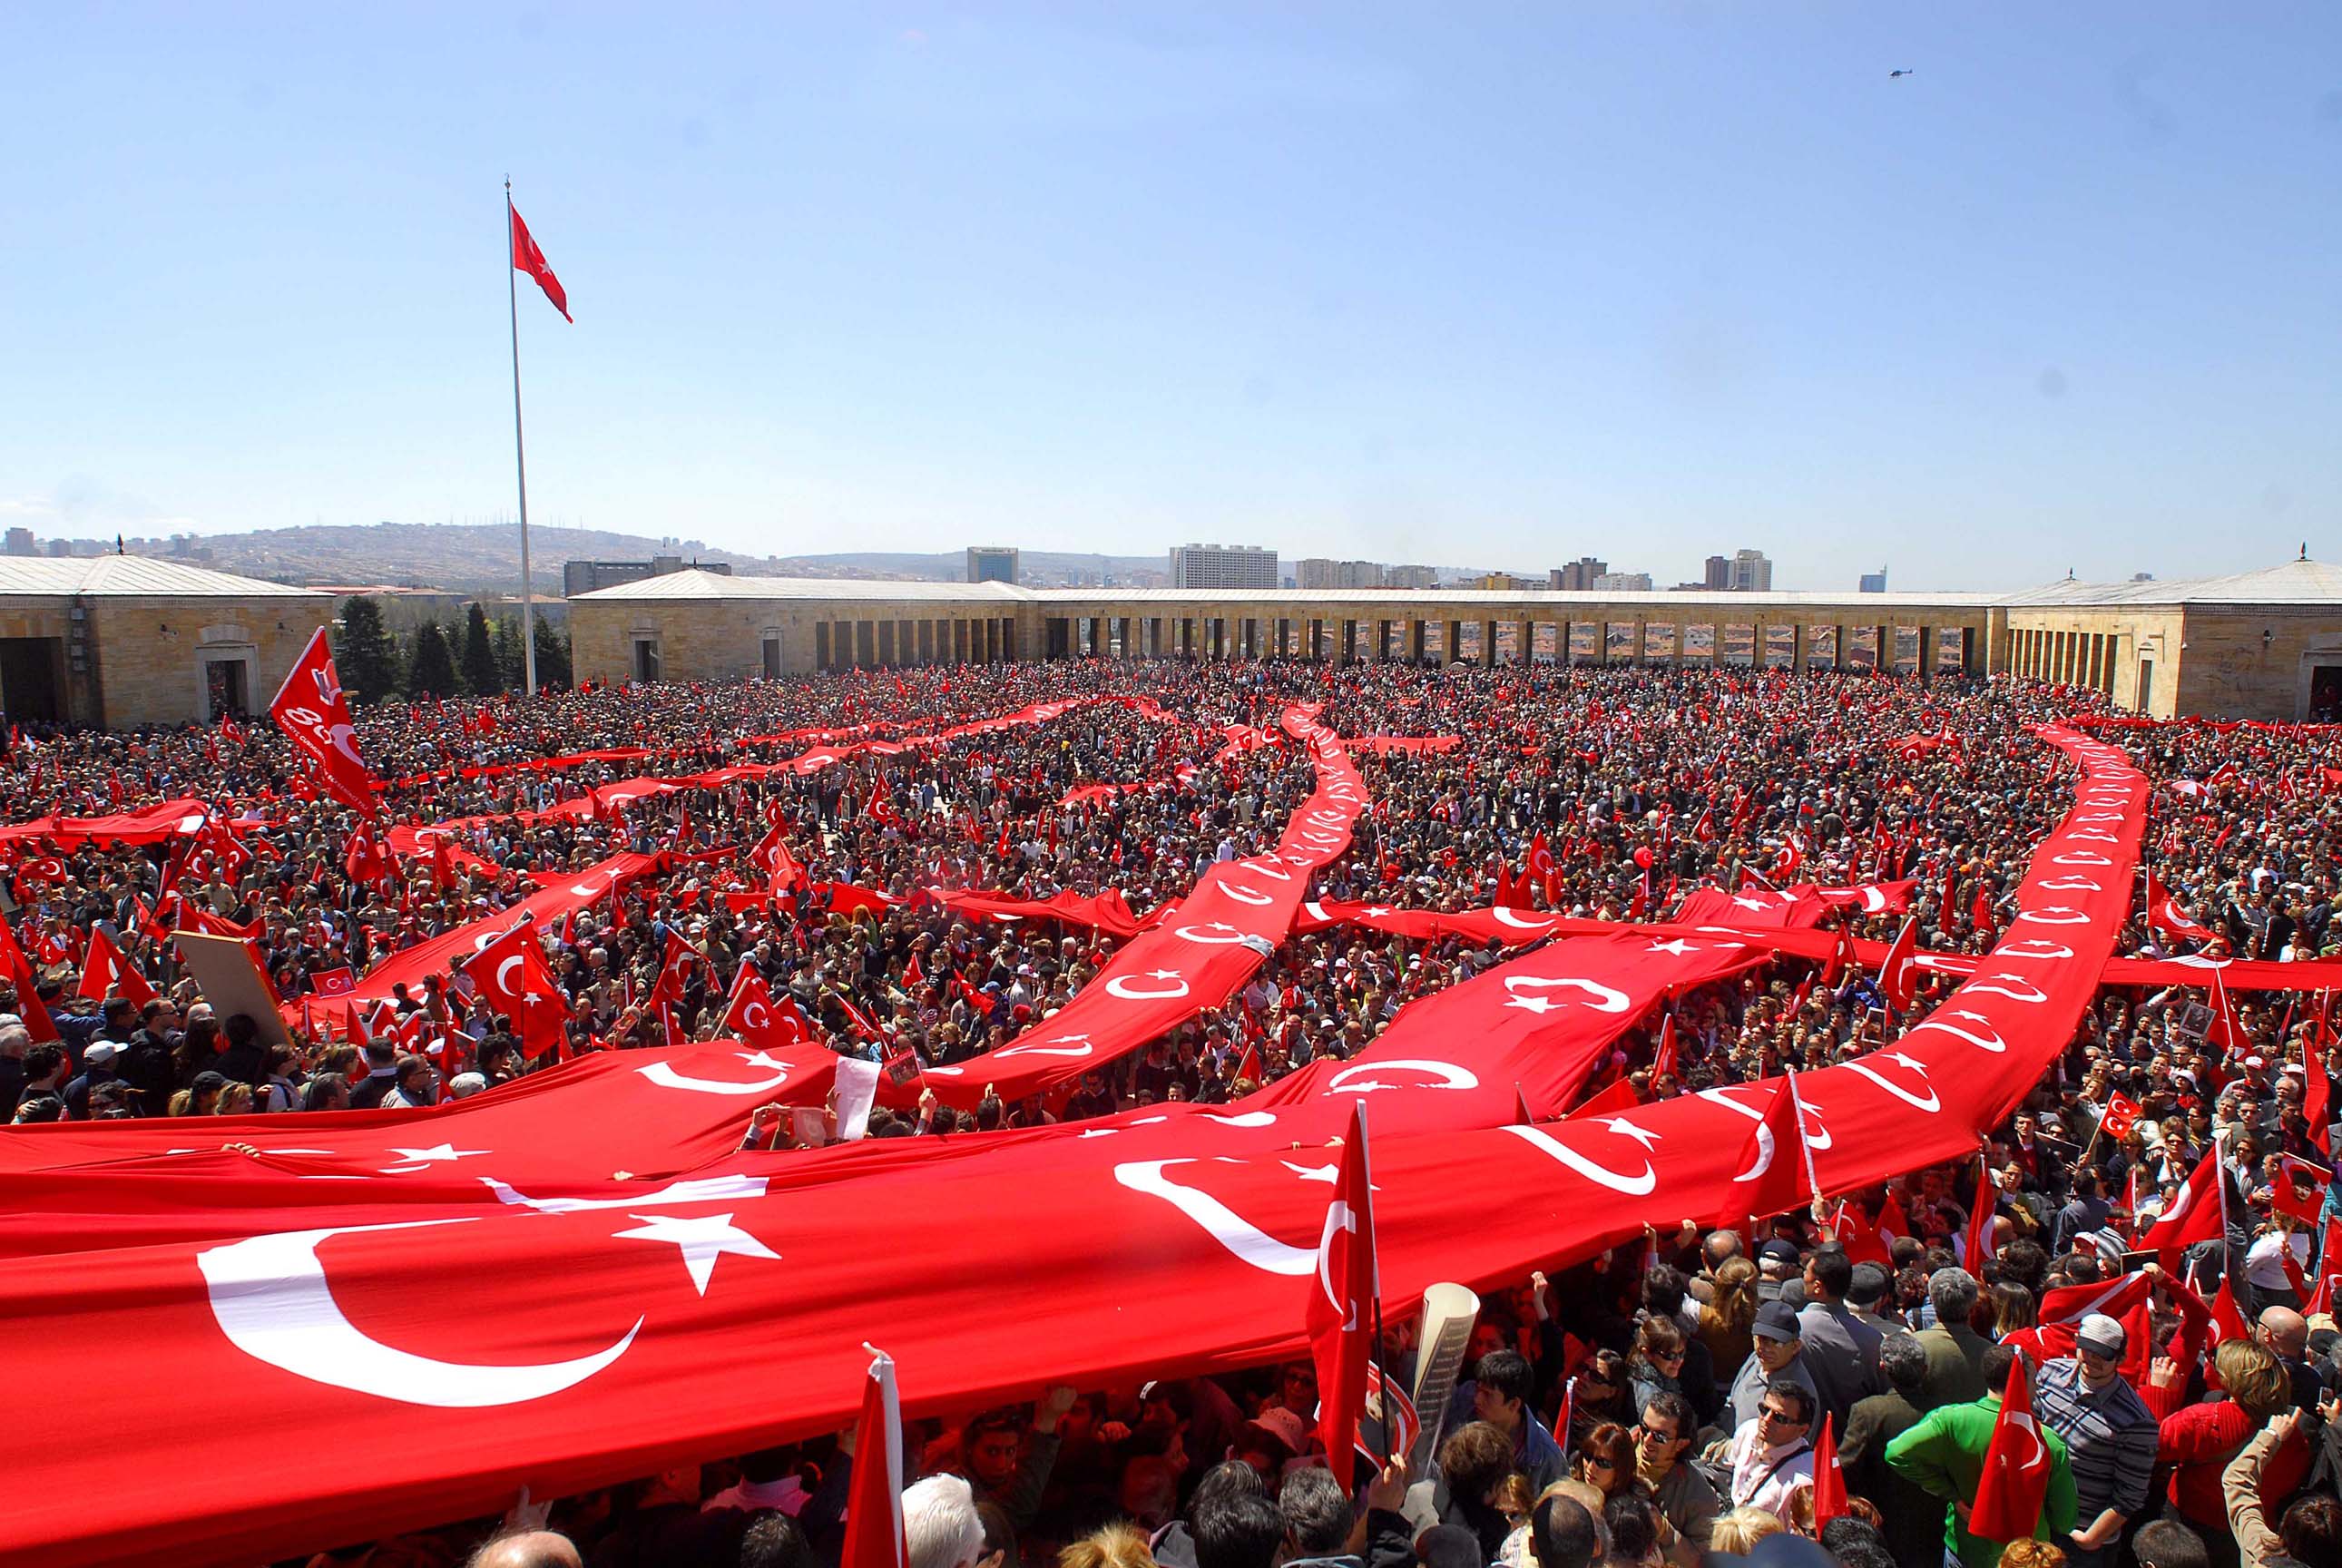   الإخوان وتركيا يتفقان على دعم تميم ضد العرب